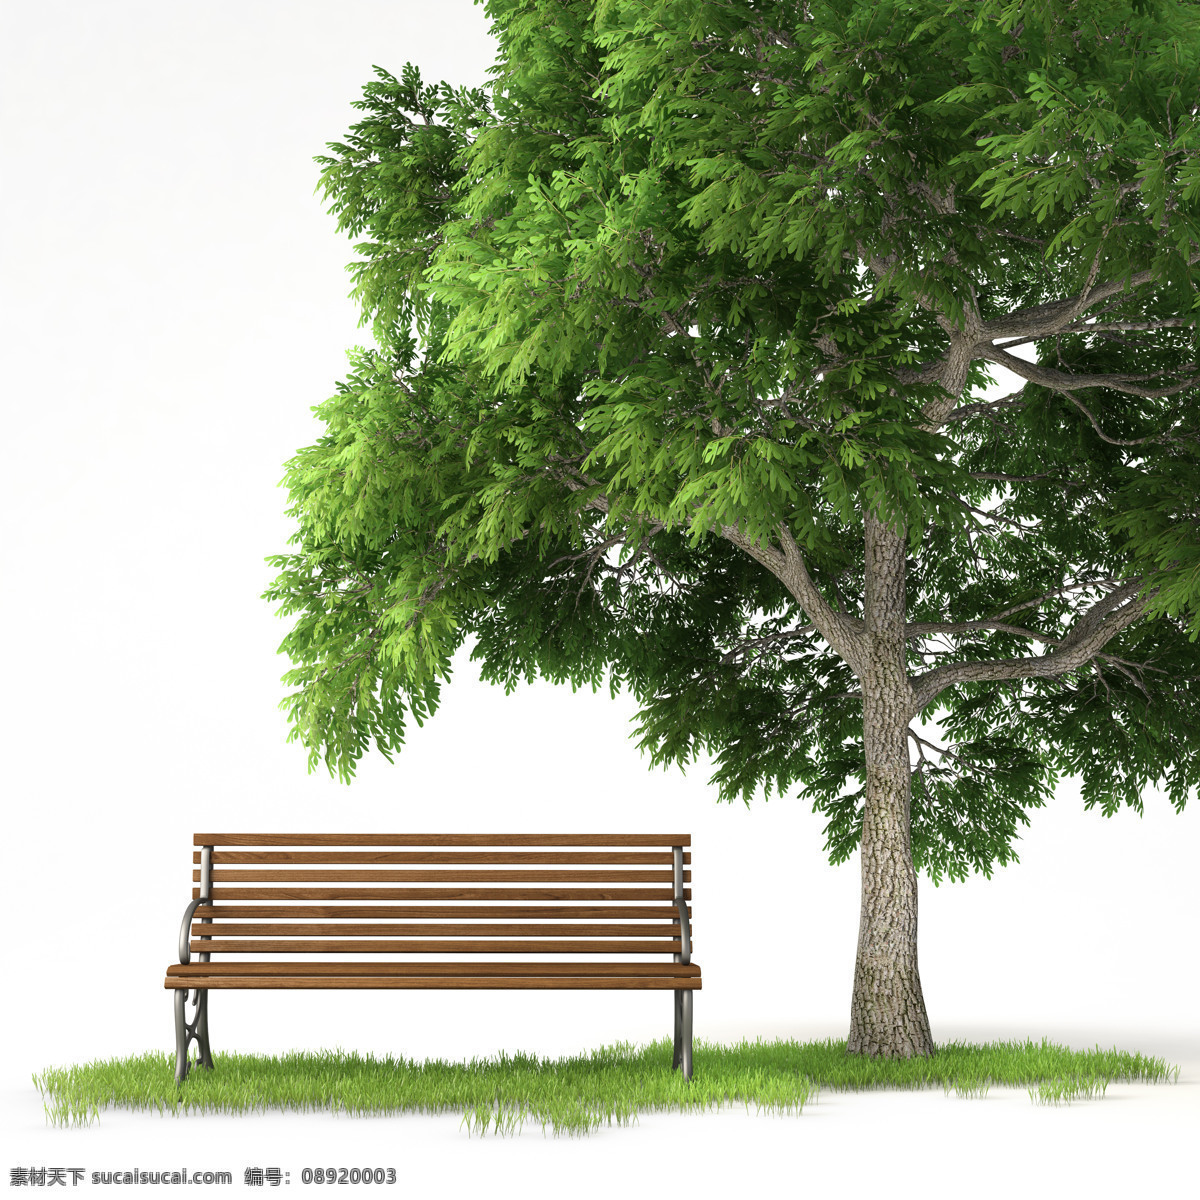 大树 椅子 景观 效果 后期 处理 树木 植物后期素材 园林景观效果 景观设计 环艺设计 园林景观 环境设计 花草树木 生物世界